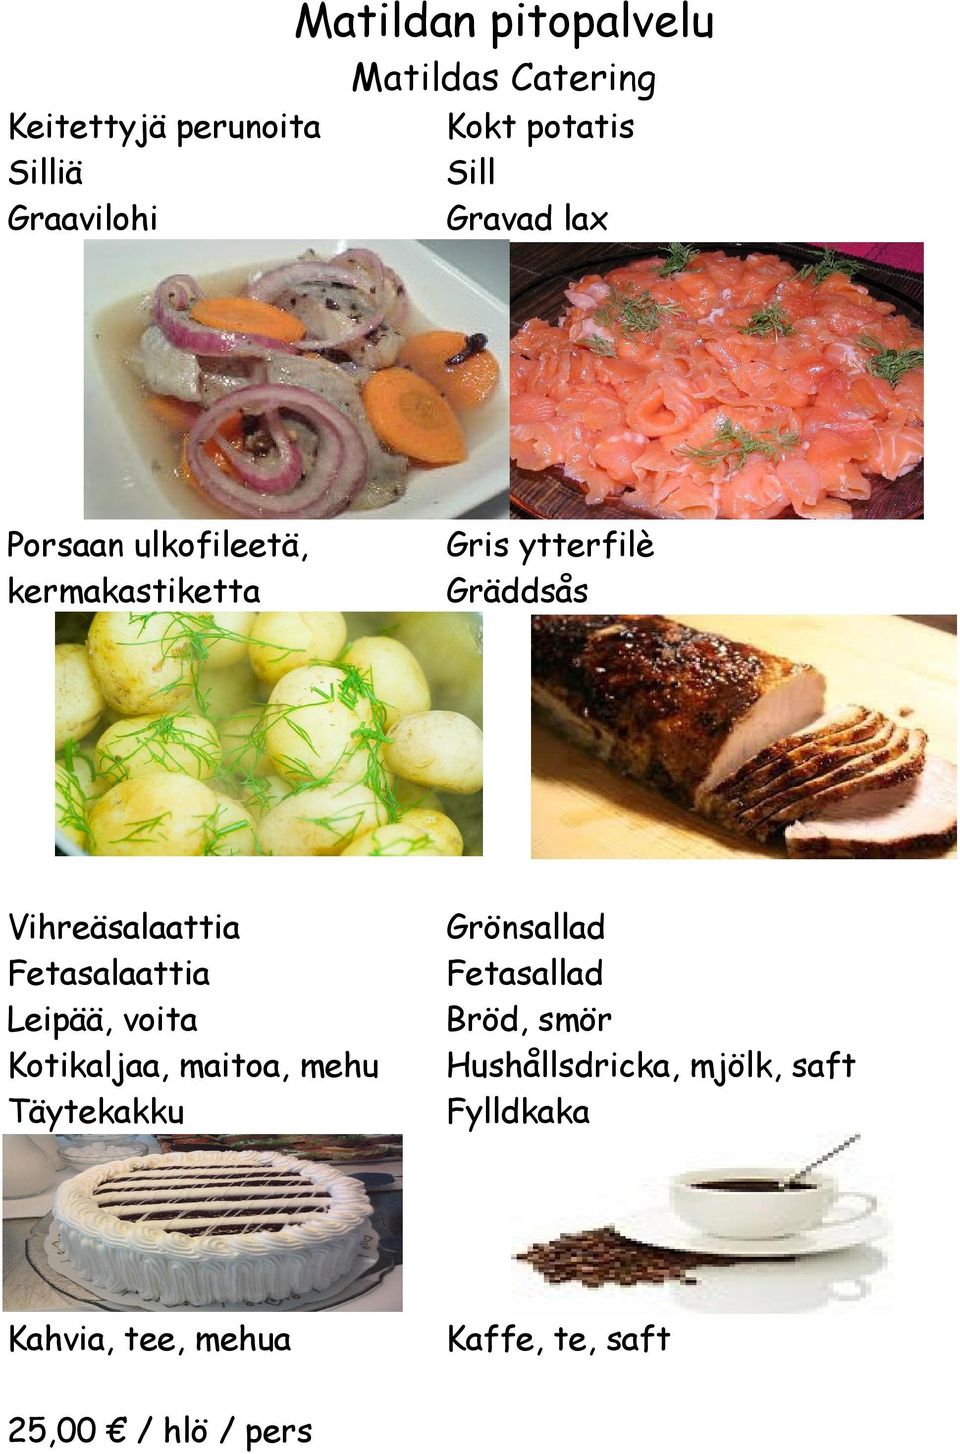 Vihreäsalaattia Fetasalaattia Leipää, voita Kotikaljaa, maitoa, mehu